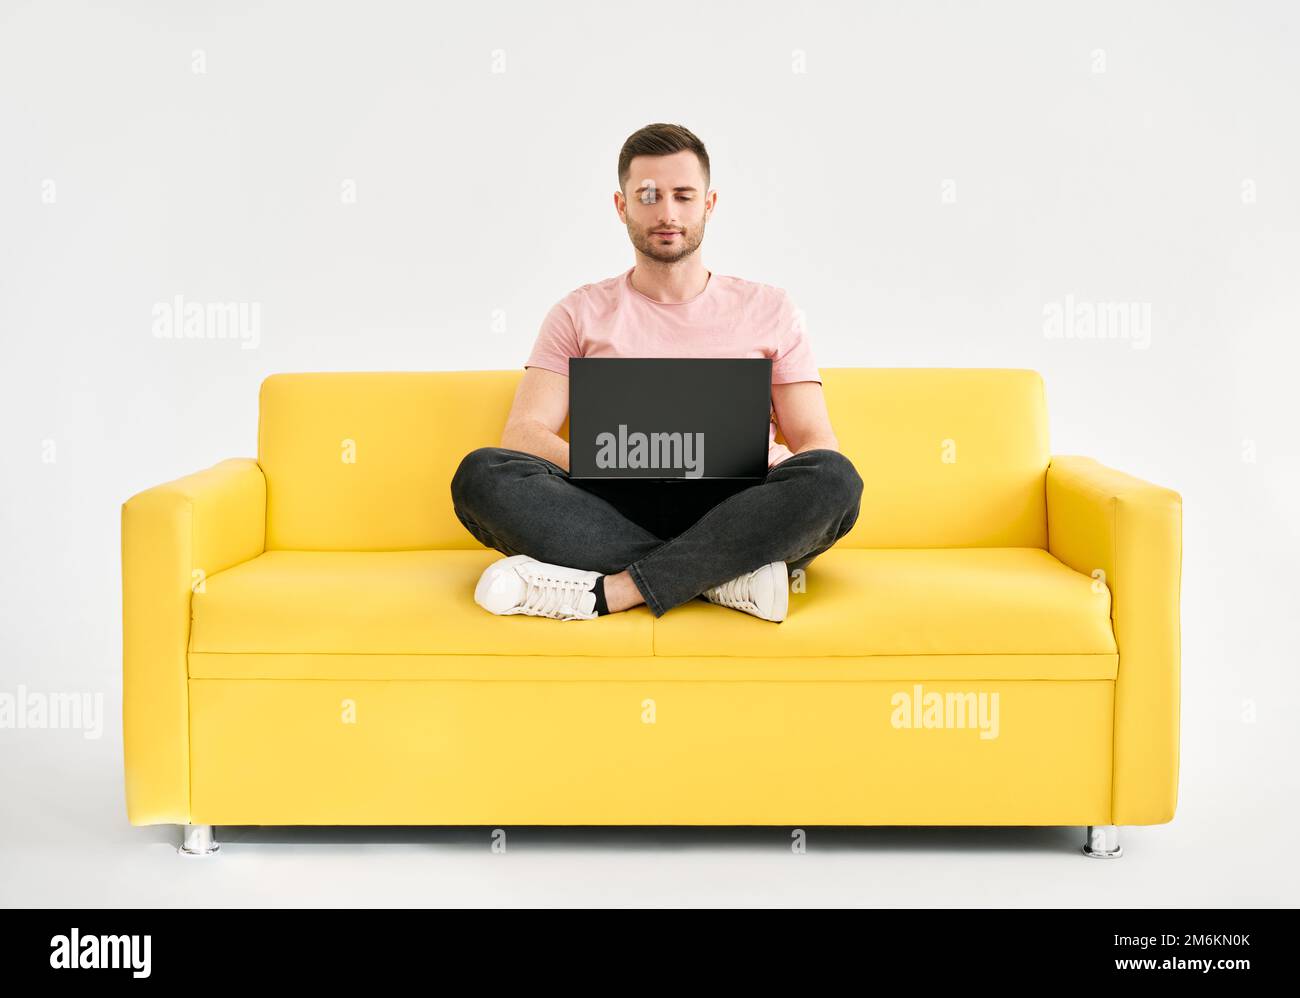 Homme détendu utilisant un ordinateur portable assis sur un canapé jaune sur fond blanc Banque D'Images